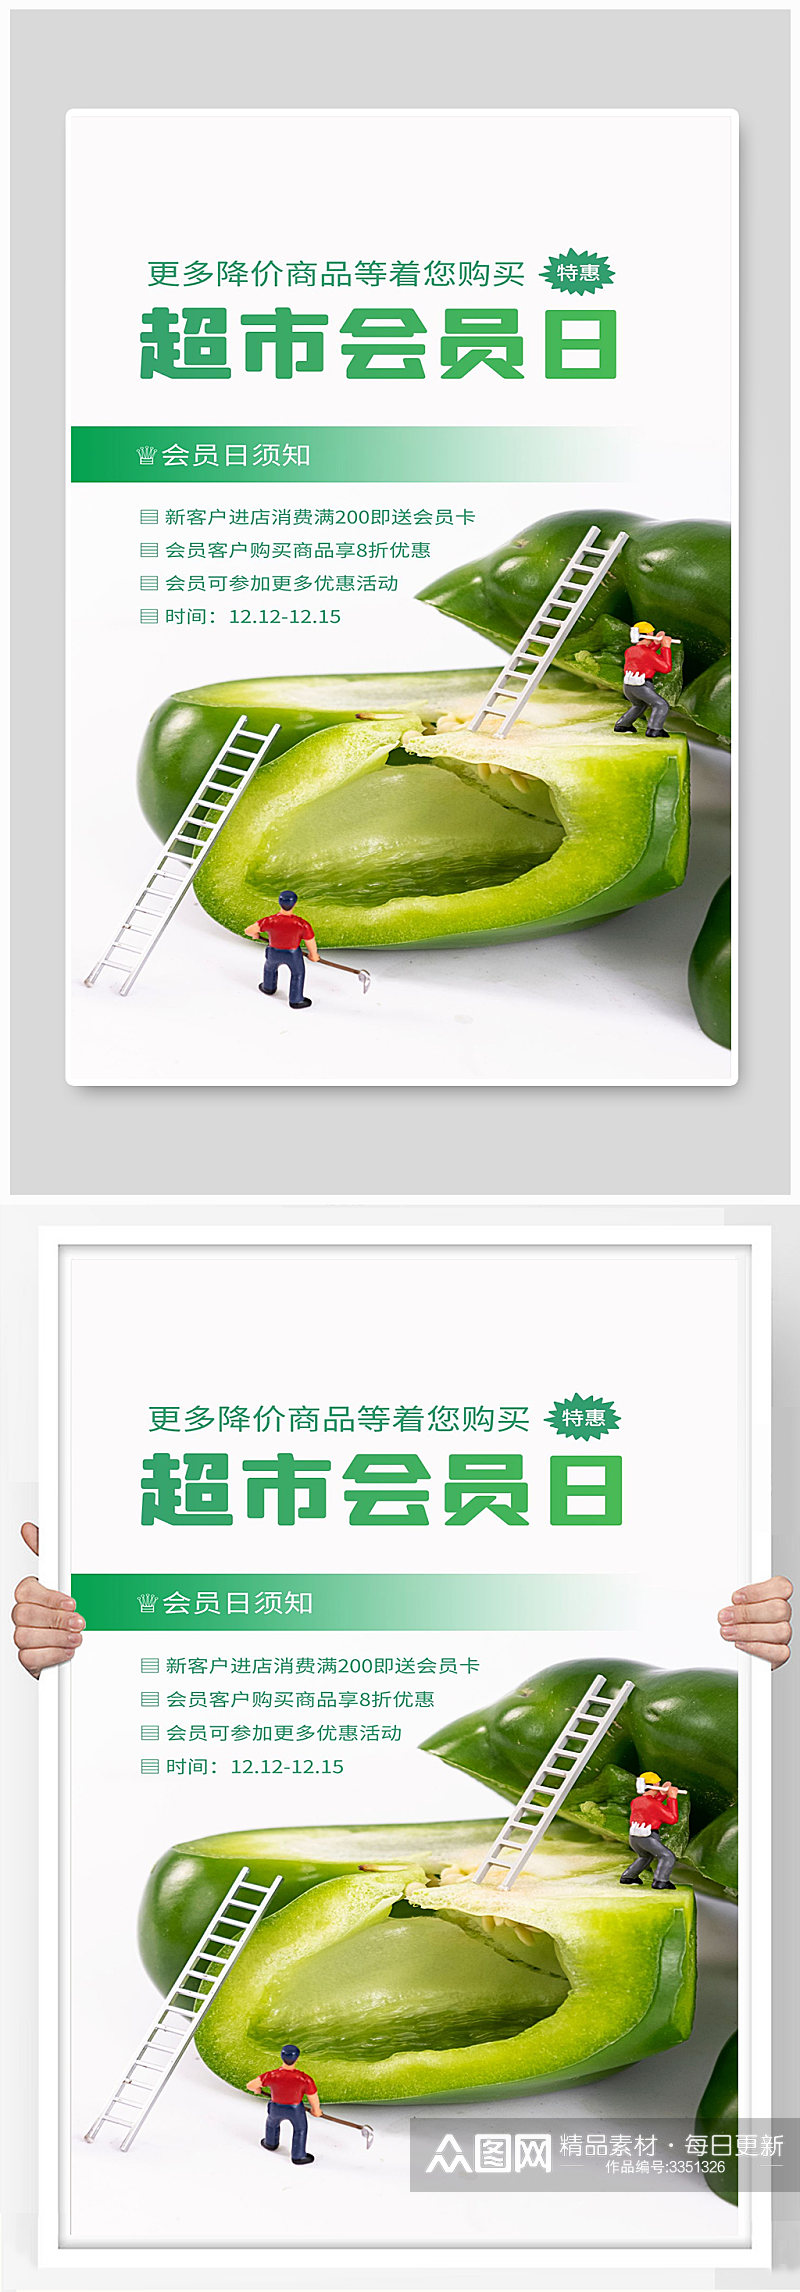 超市会员日会员须知青椒卡通宣传海报素材